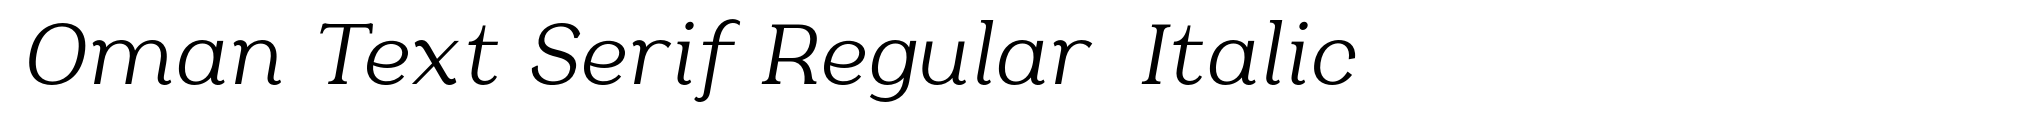 Oman Text Serif Regular  Italic image